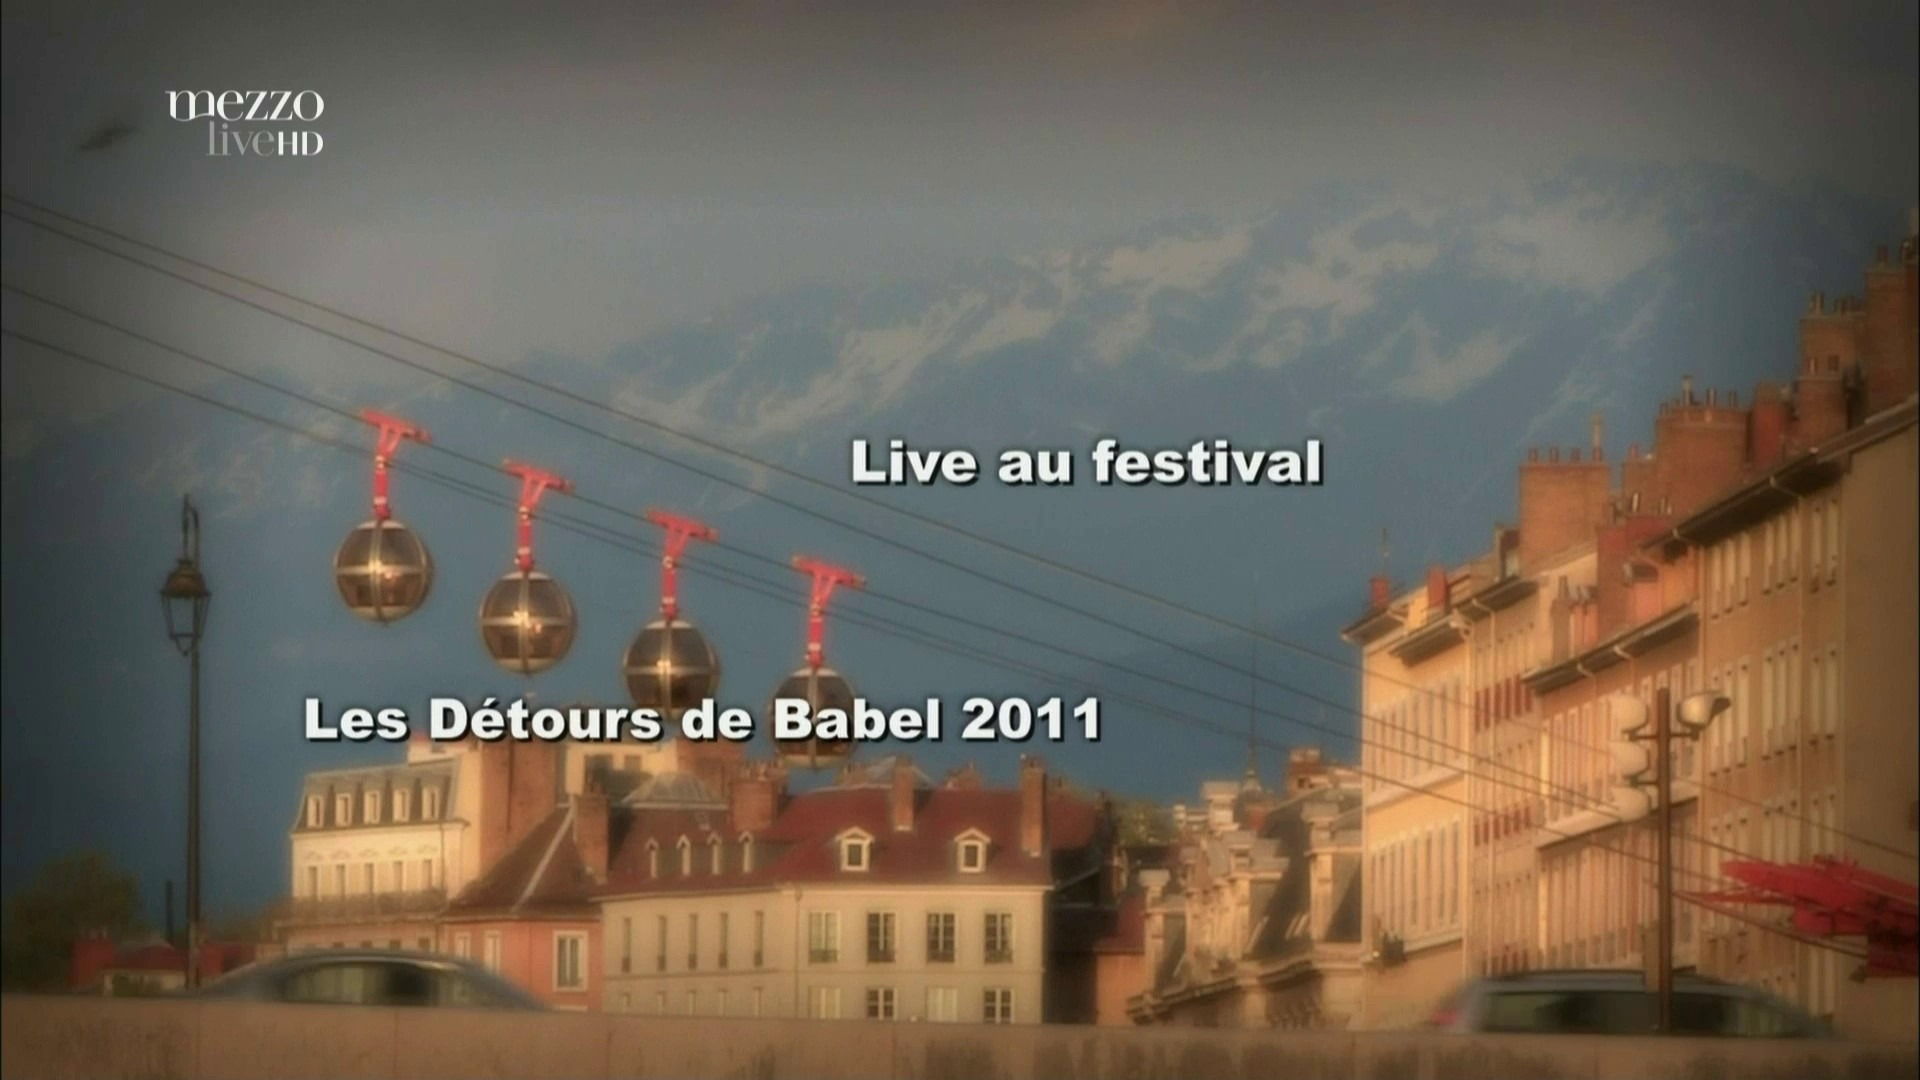 2011 Fanfaron, Creation de Rene Lacaille - Live au Festival Les Deours de Babel [HDTV 1080p] 0